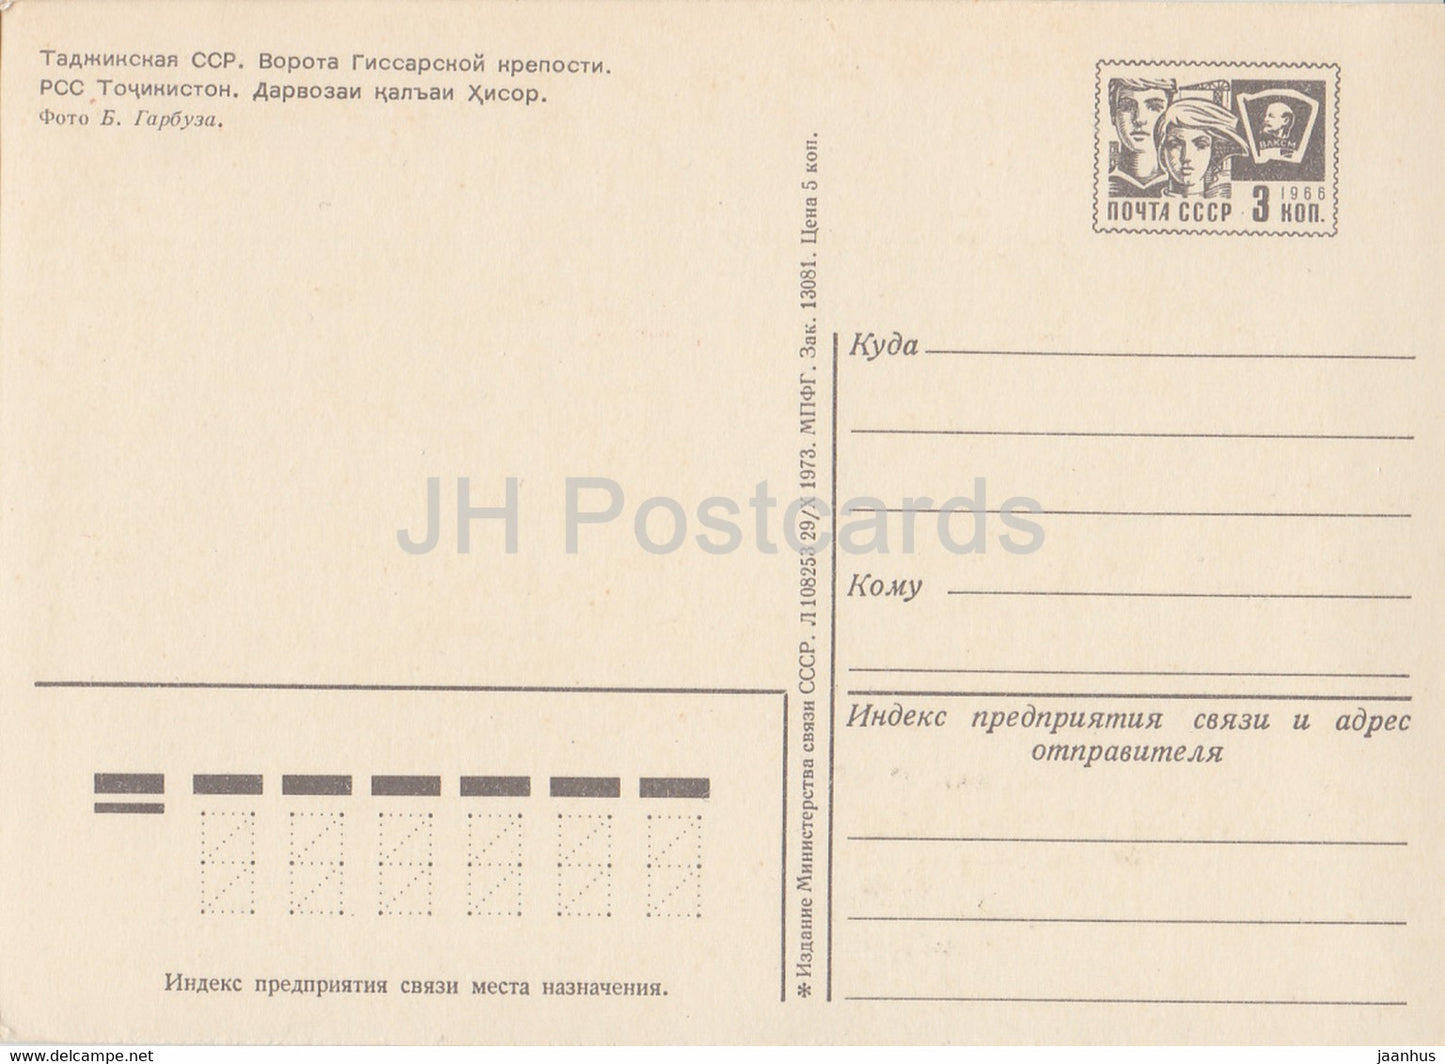 Hissar Fortress Gate - entier postal - 1973 - Tadjikistan URSS - inutilisé